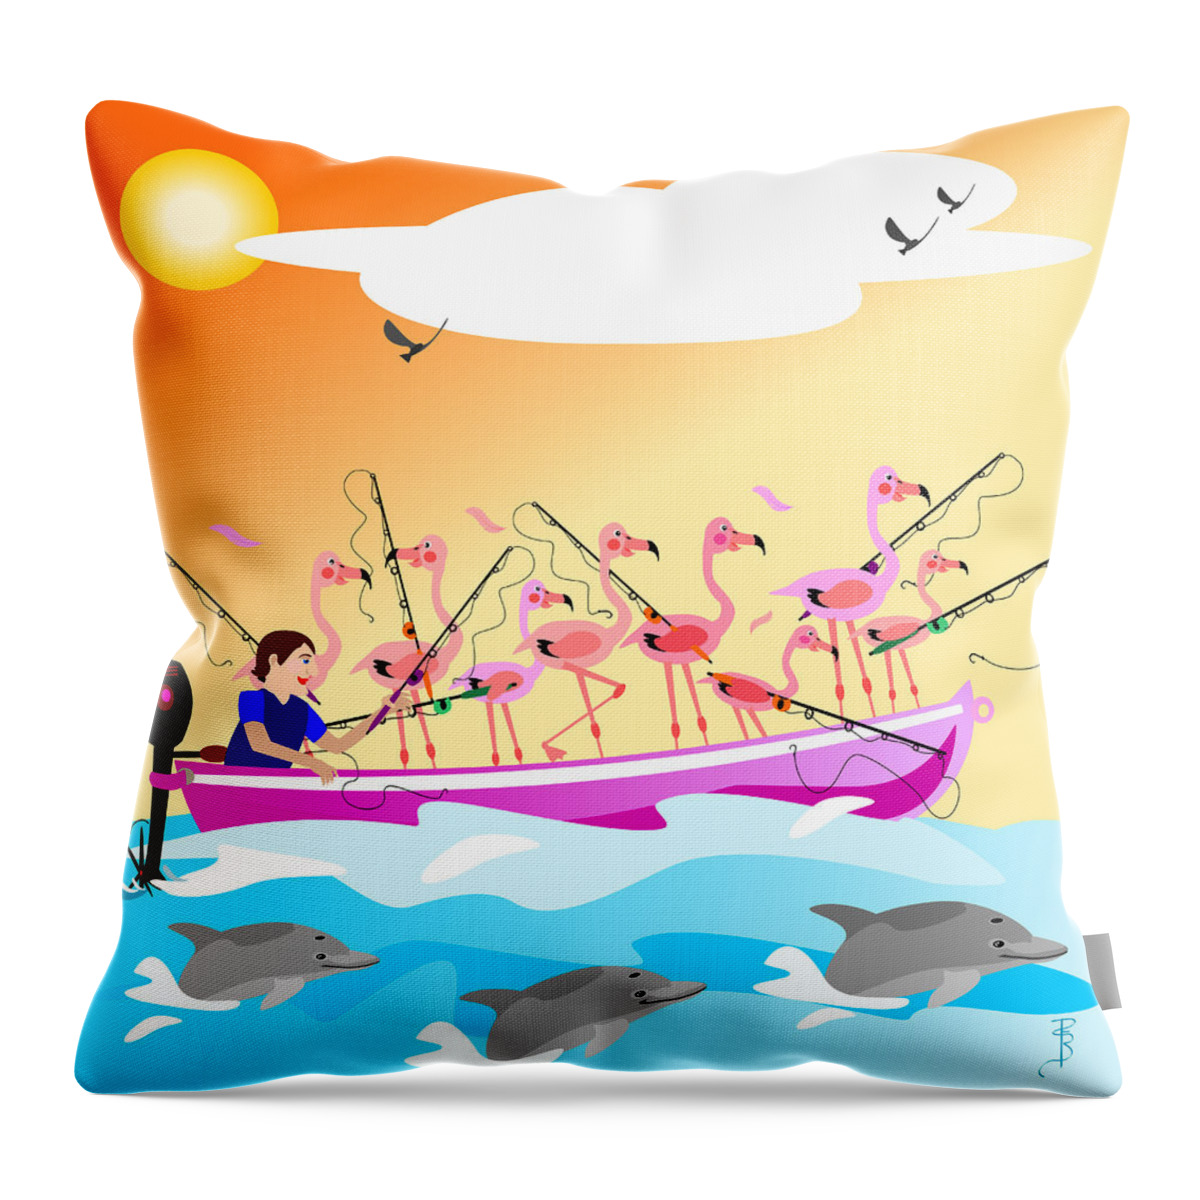 Flamingo Throw Pillow featuring the digital art Flamingo fishing by Debra Baldwin